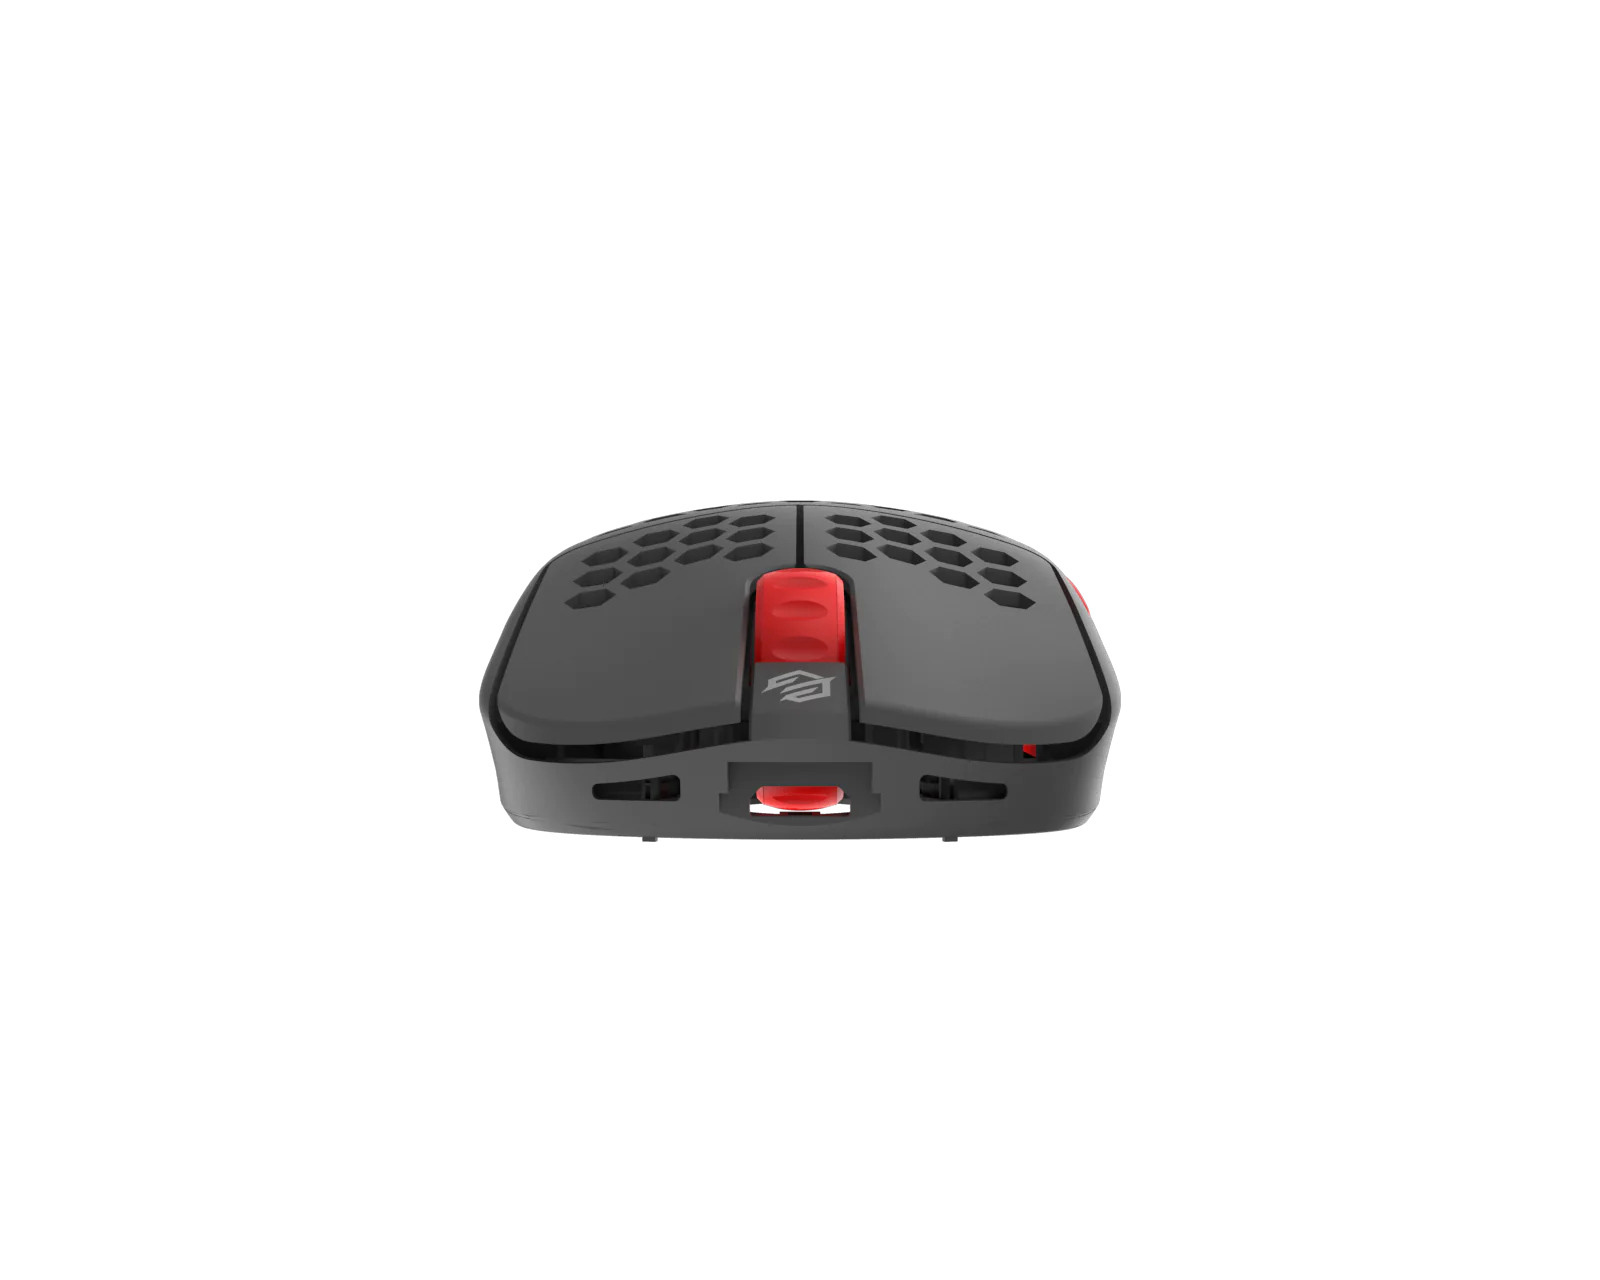 G-Wolves HSK Pro 4K Wireless Mouse Fingertip - Gray/Red